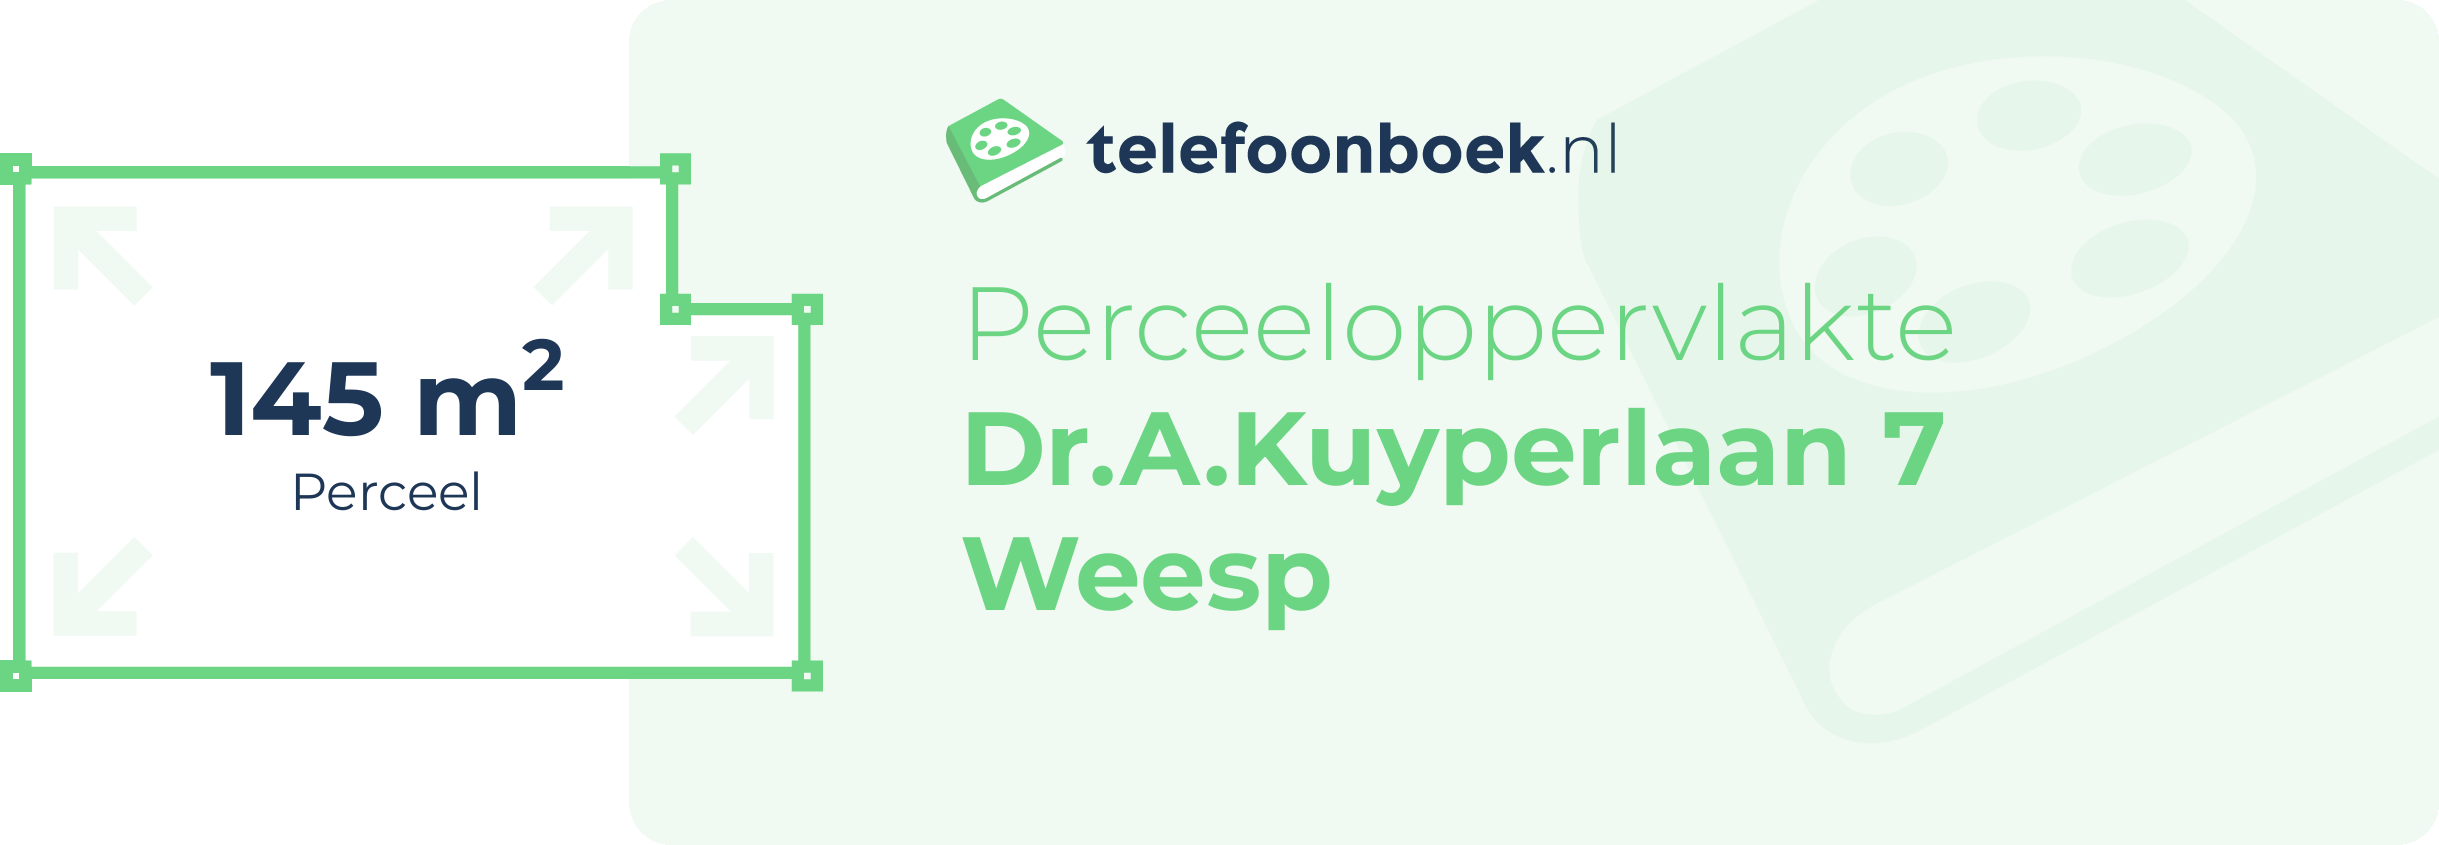 Perceeloppervlakte Dr.A.Kuyperlaan 7 Weesp